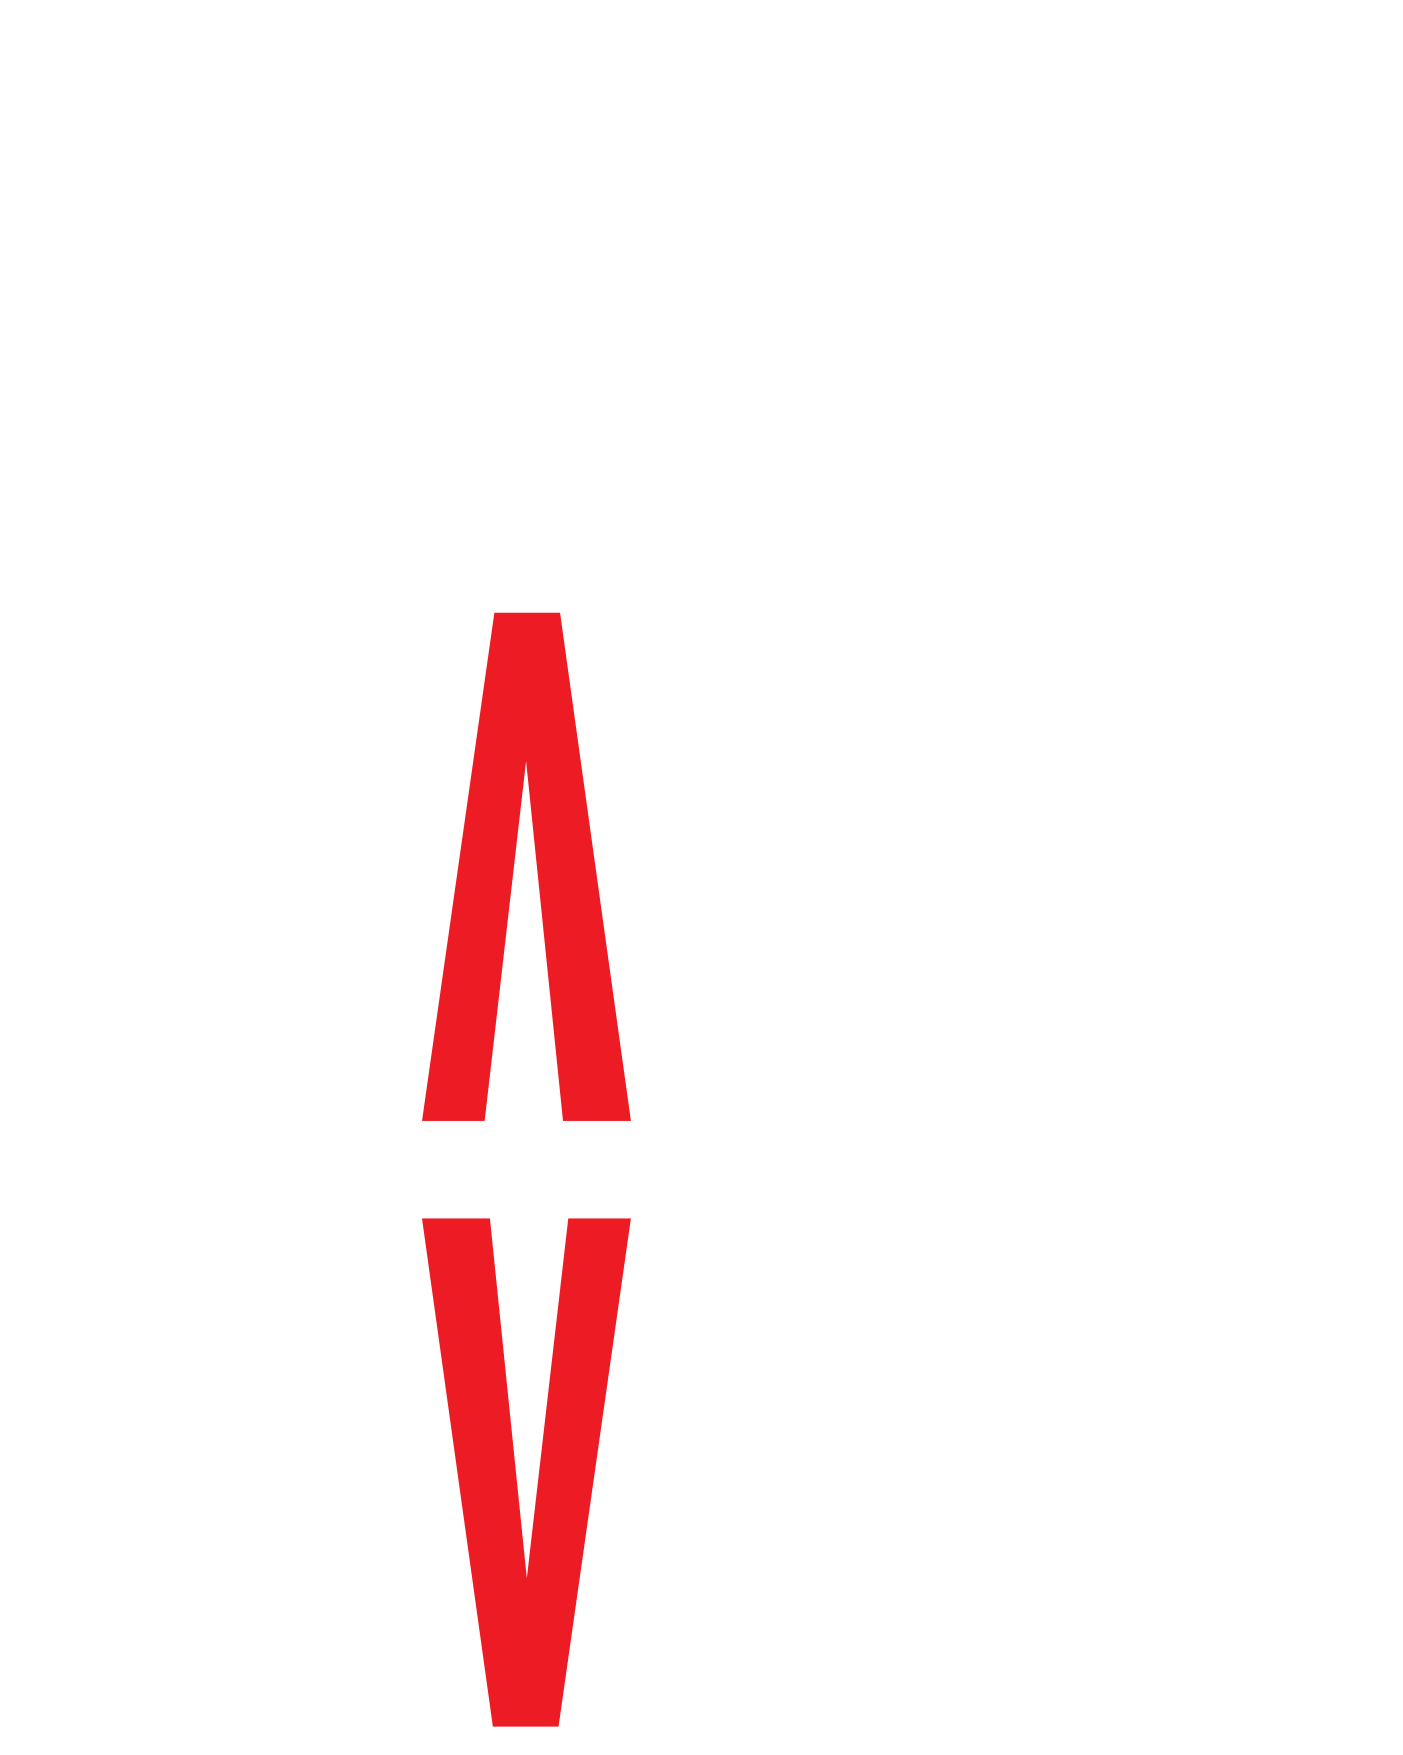 DJ Frazier Davis